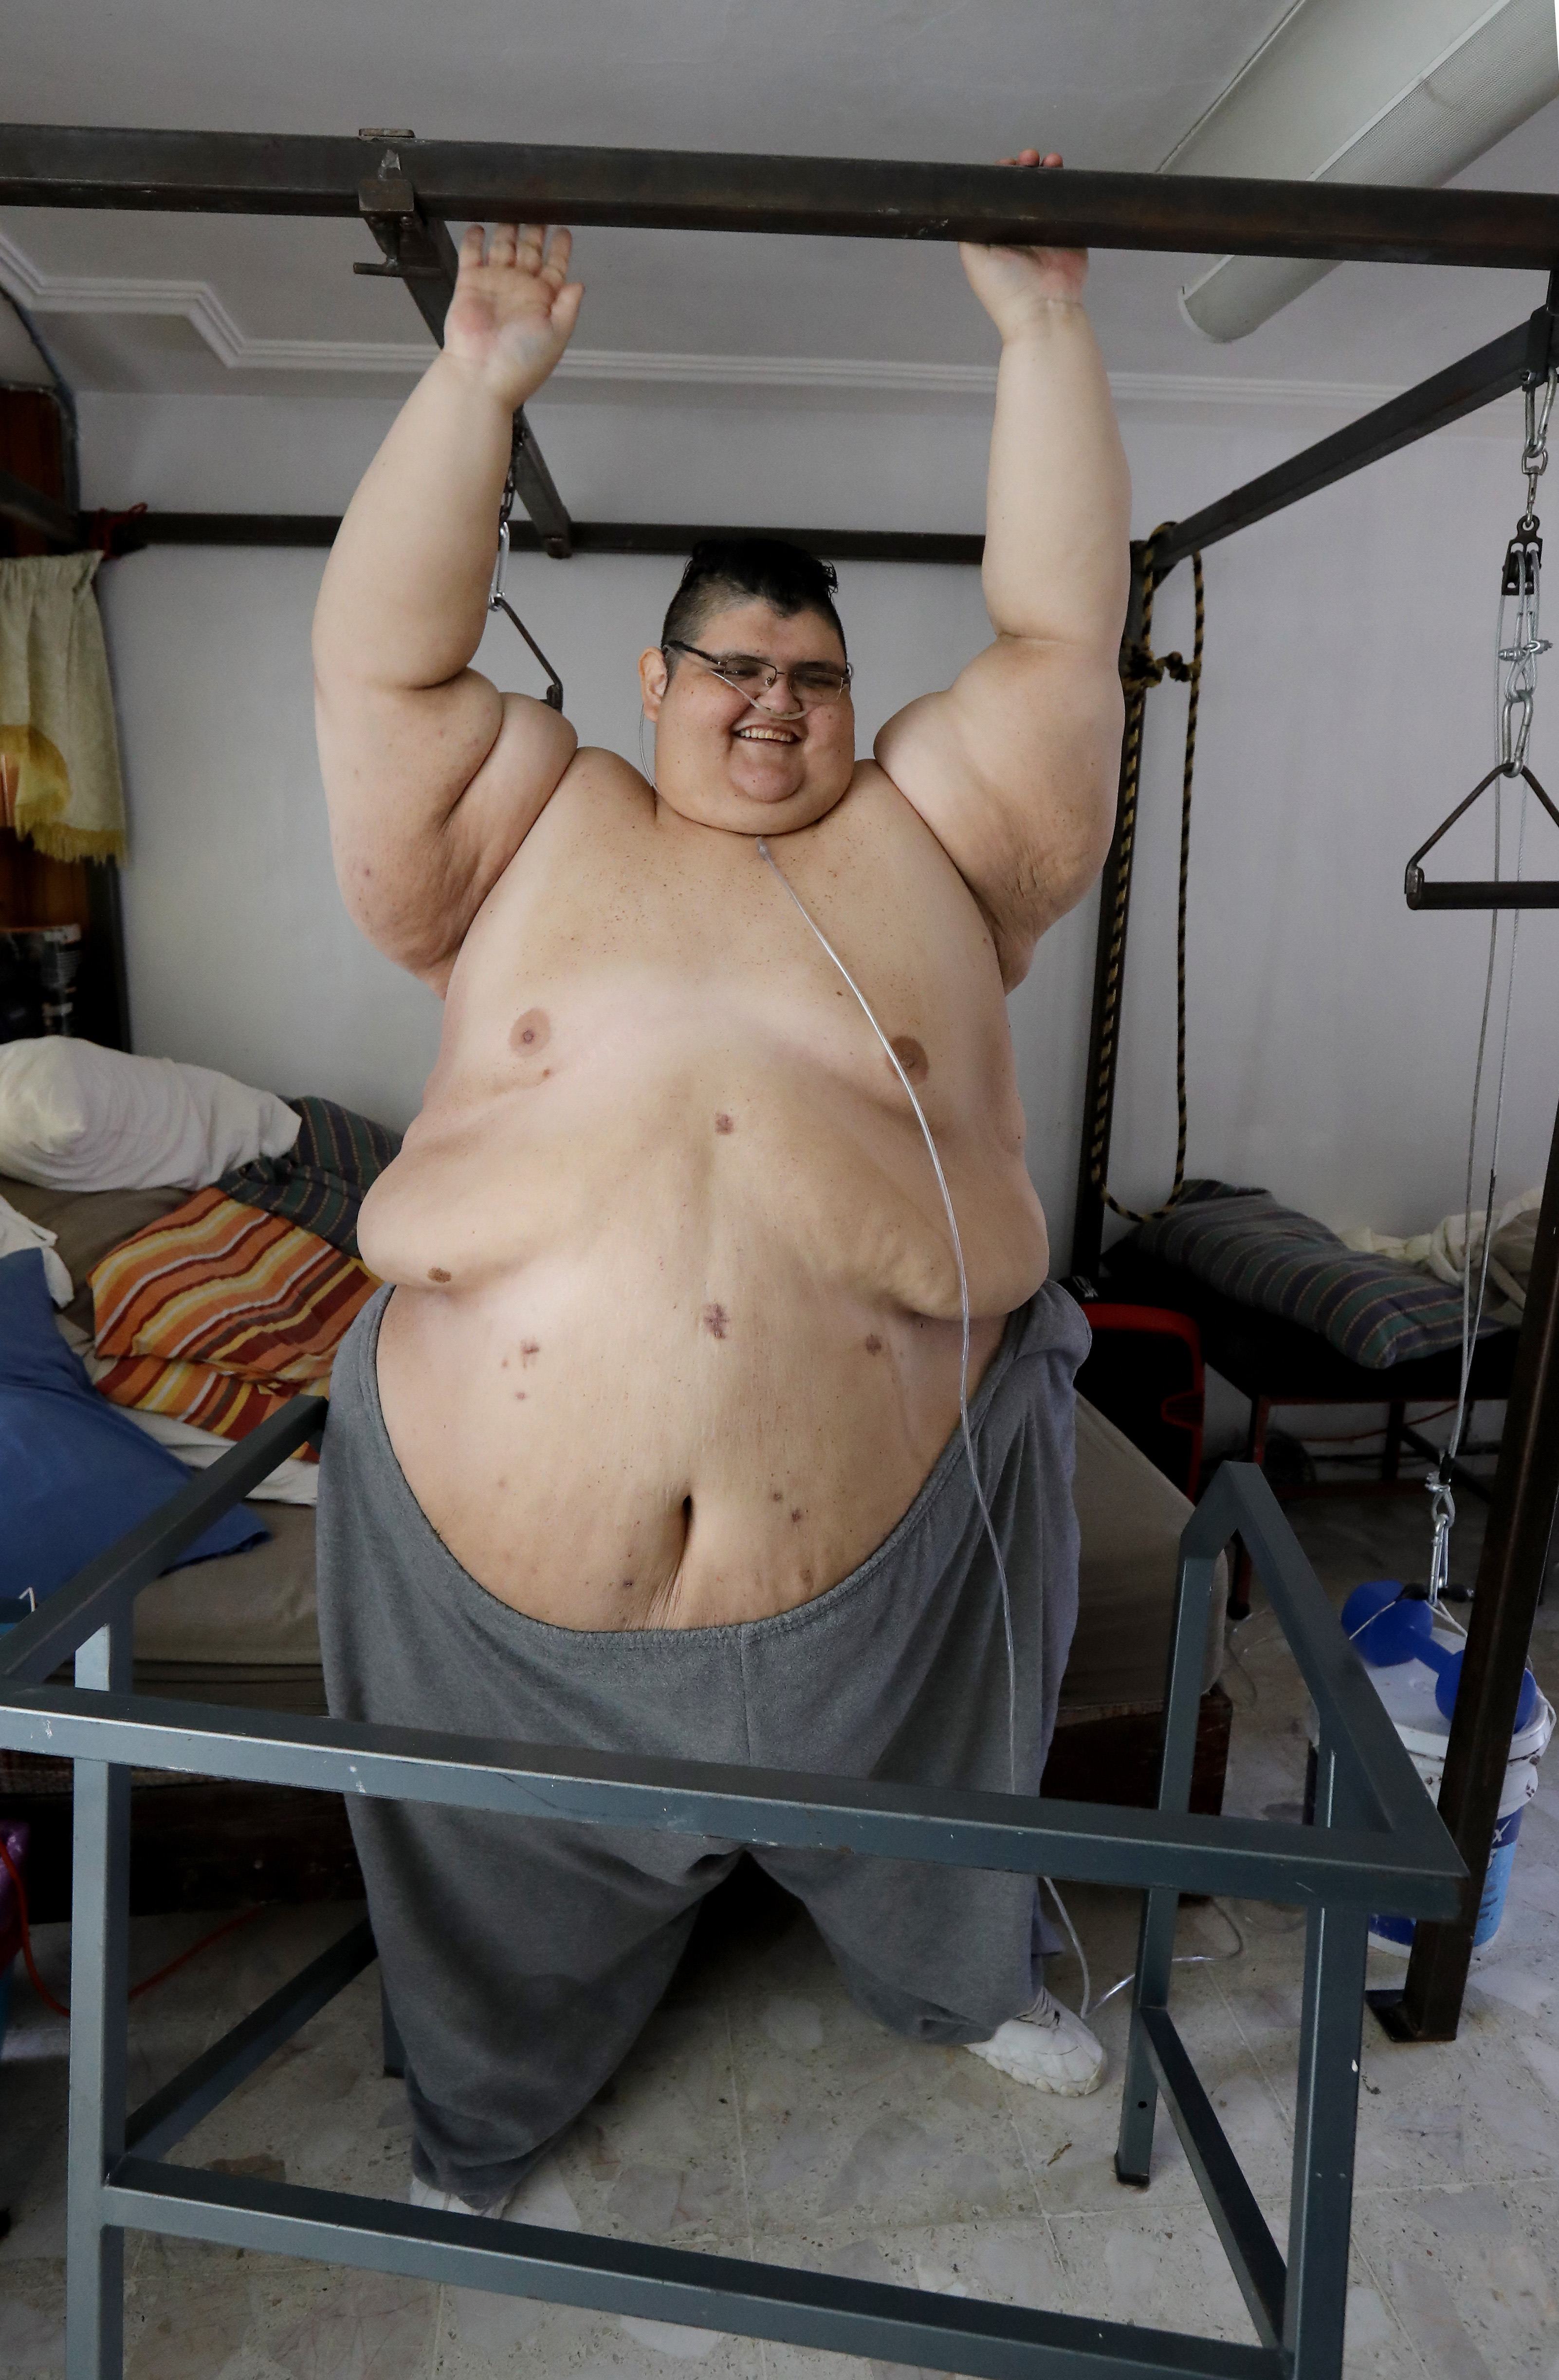 Megdöbbentő! Borzasztóan néz ki a világ legkövérebb embere! – fotóval! | Well&fit